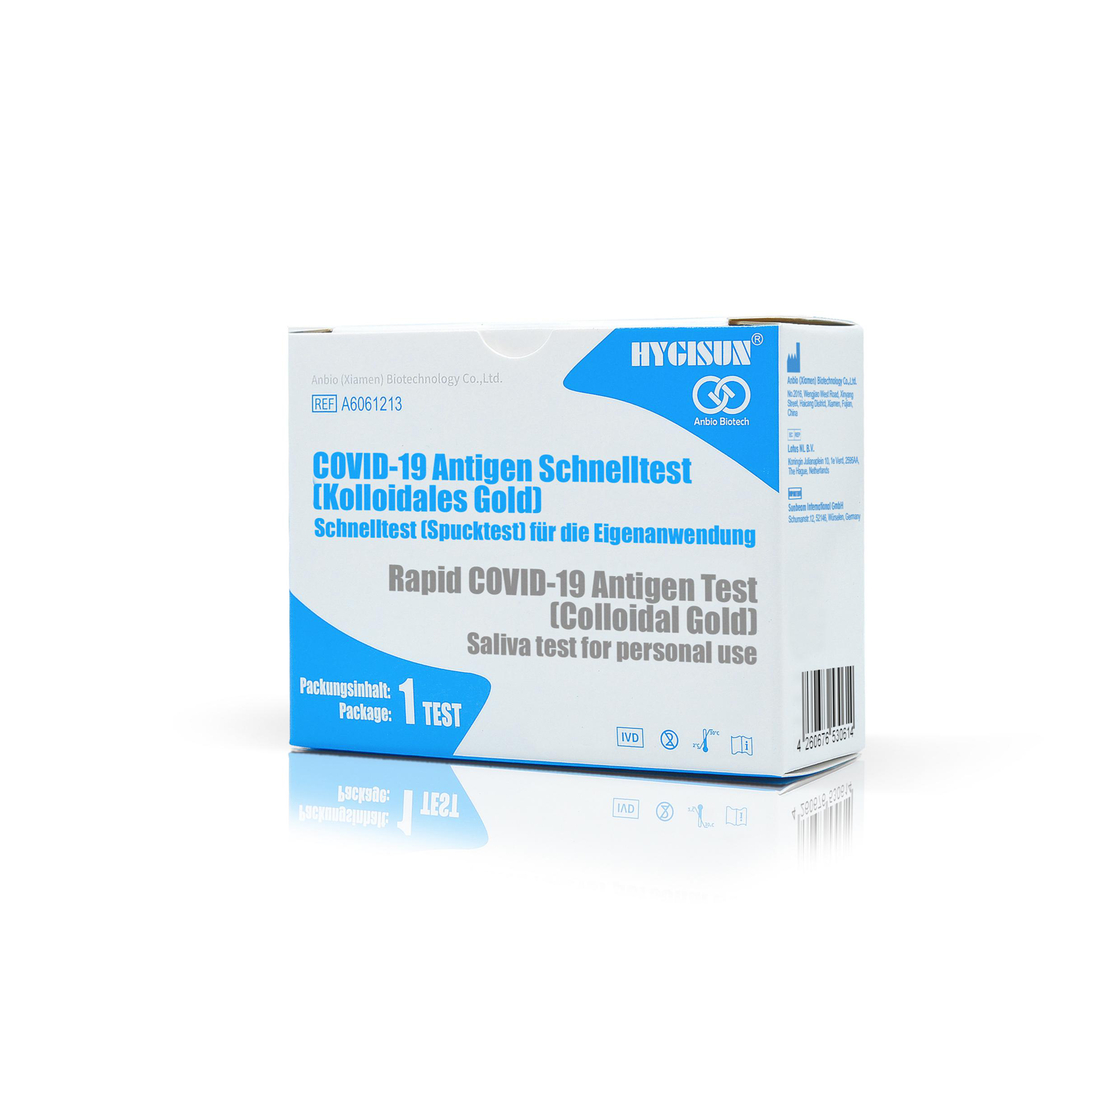 HYGISUN® COVID-19 Antigen Schnelltest, Spucktest für die Eigenanwendung